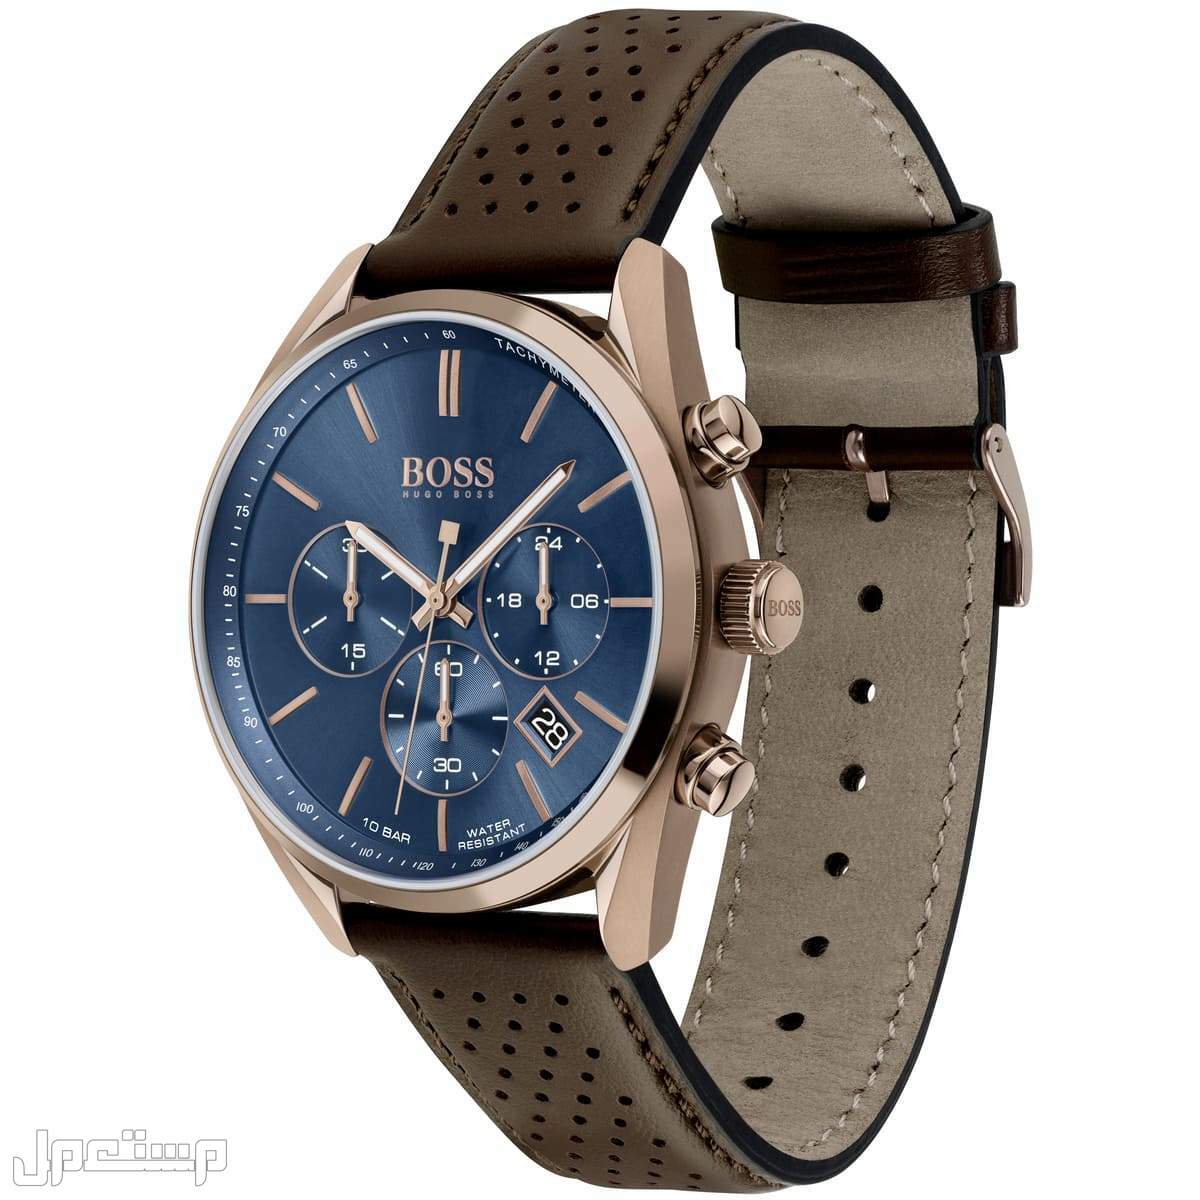 أفضل ساعات بوس Boss الأكثر مبيعا هذا العام وأسعارها في الإمارات العربية المتحدة ساع 1513817-hugo-boss-watch-men-blue-dial-leather-brown-strap-quartz-analog-chro